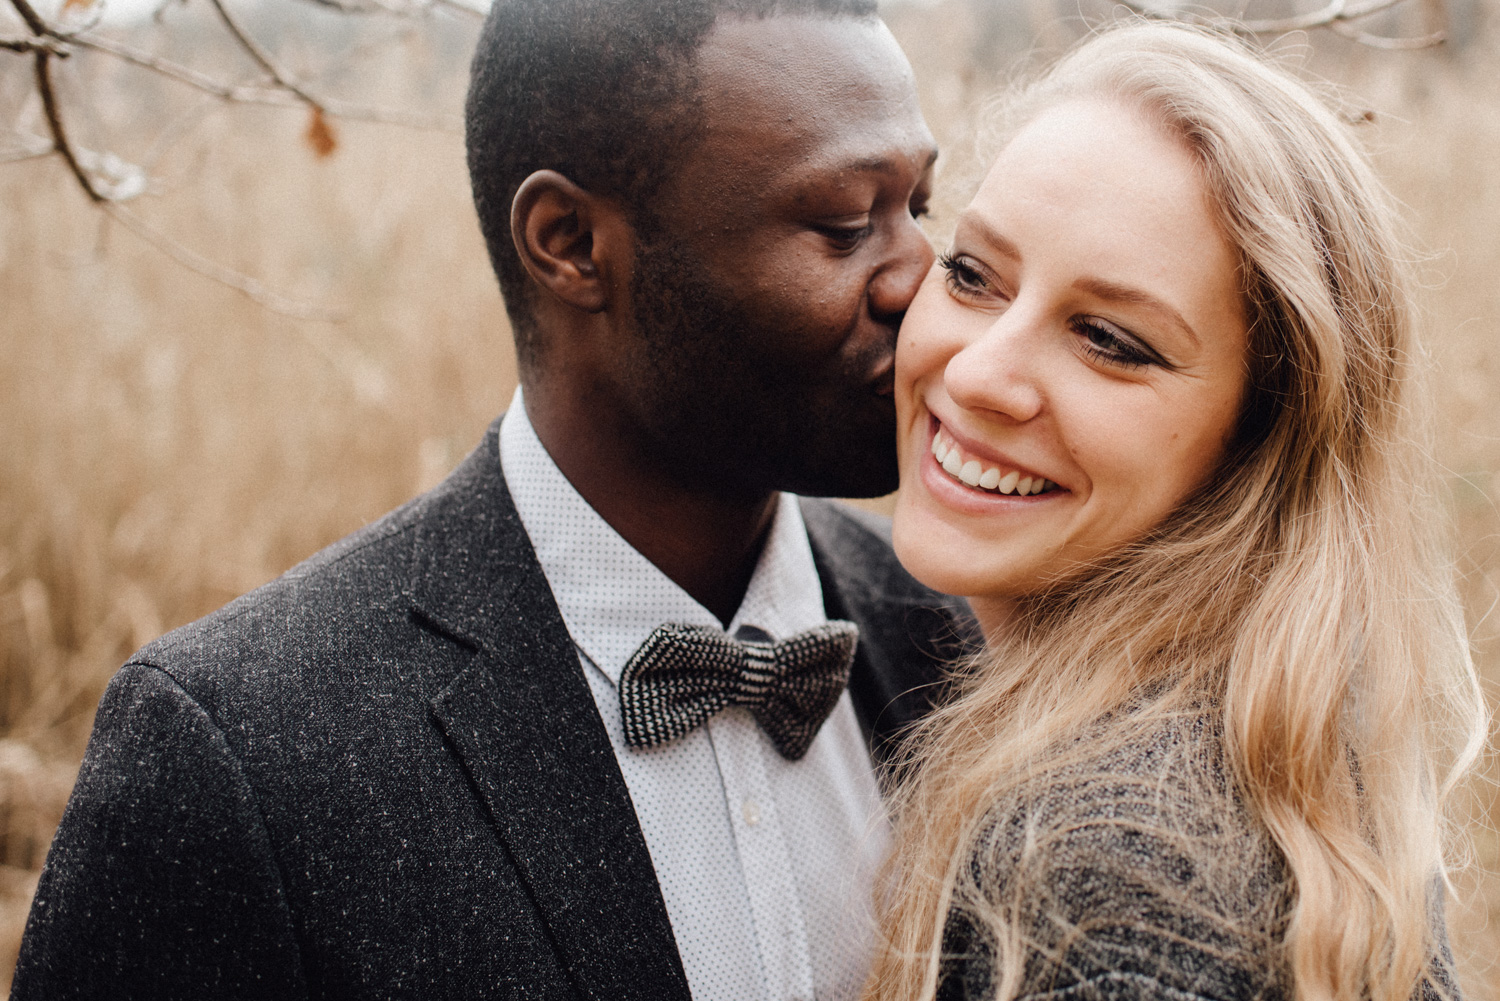 Ein Mann küsst seine Verlobte auf die Wange während sie glücklich lacht